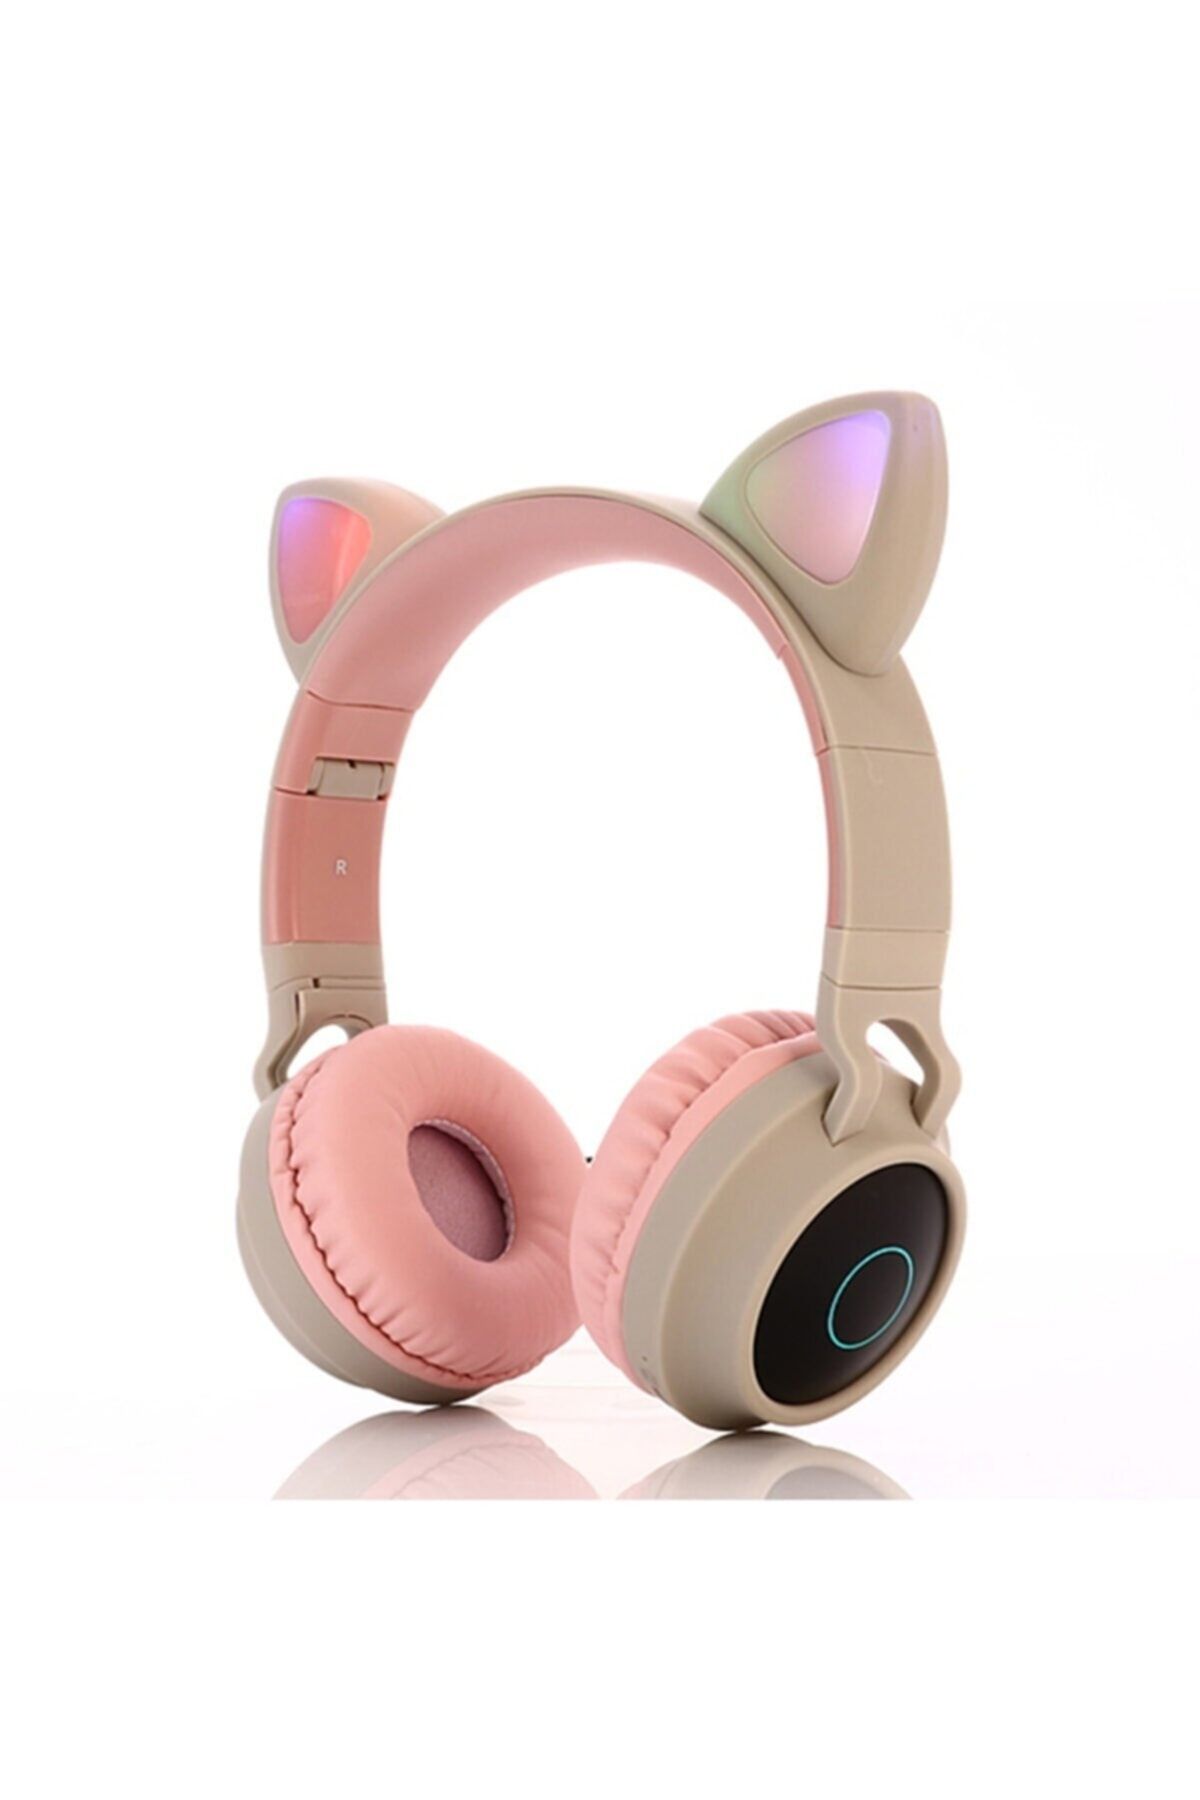 T G Kedi Kulaklı Kulaklık Led Işıklı Mikronlu Hafıza Kartı/Aux Girişli Kablosuz Bluetooth Kedi Kulaklık